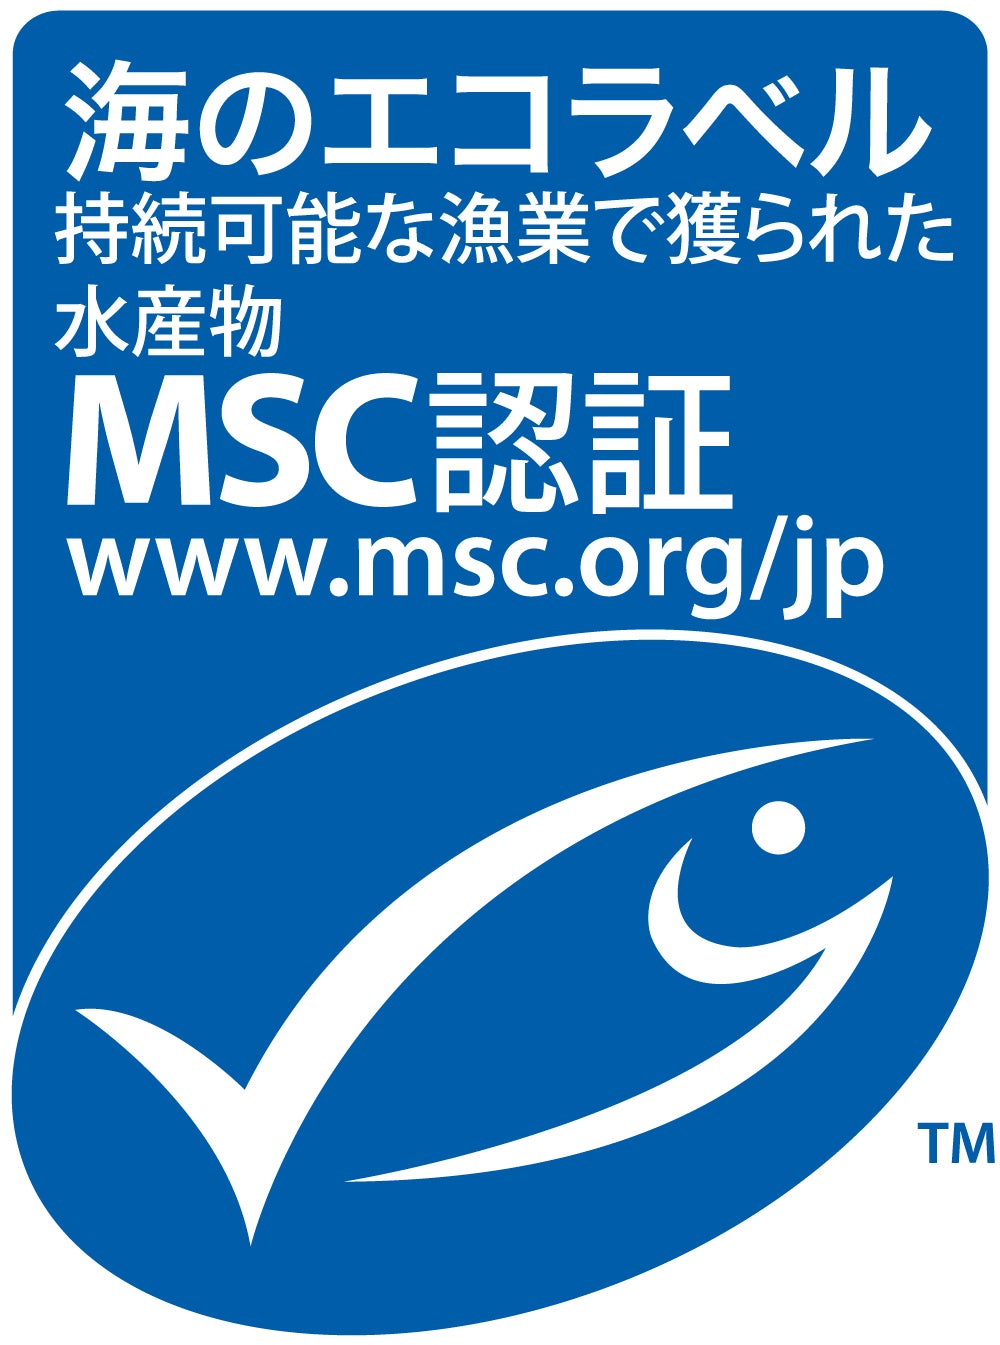 大洋エーアンドエフがカツオ・キハダマグロまき網漁業でMSC漁業認証の審査入りのサブ画像1